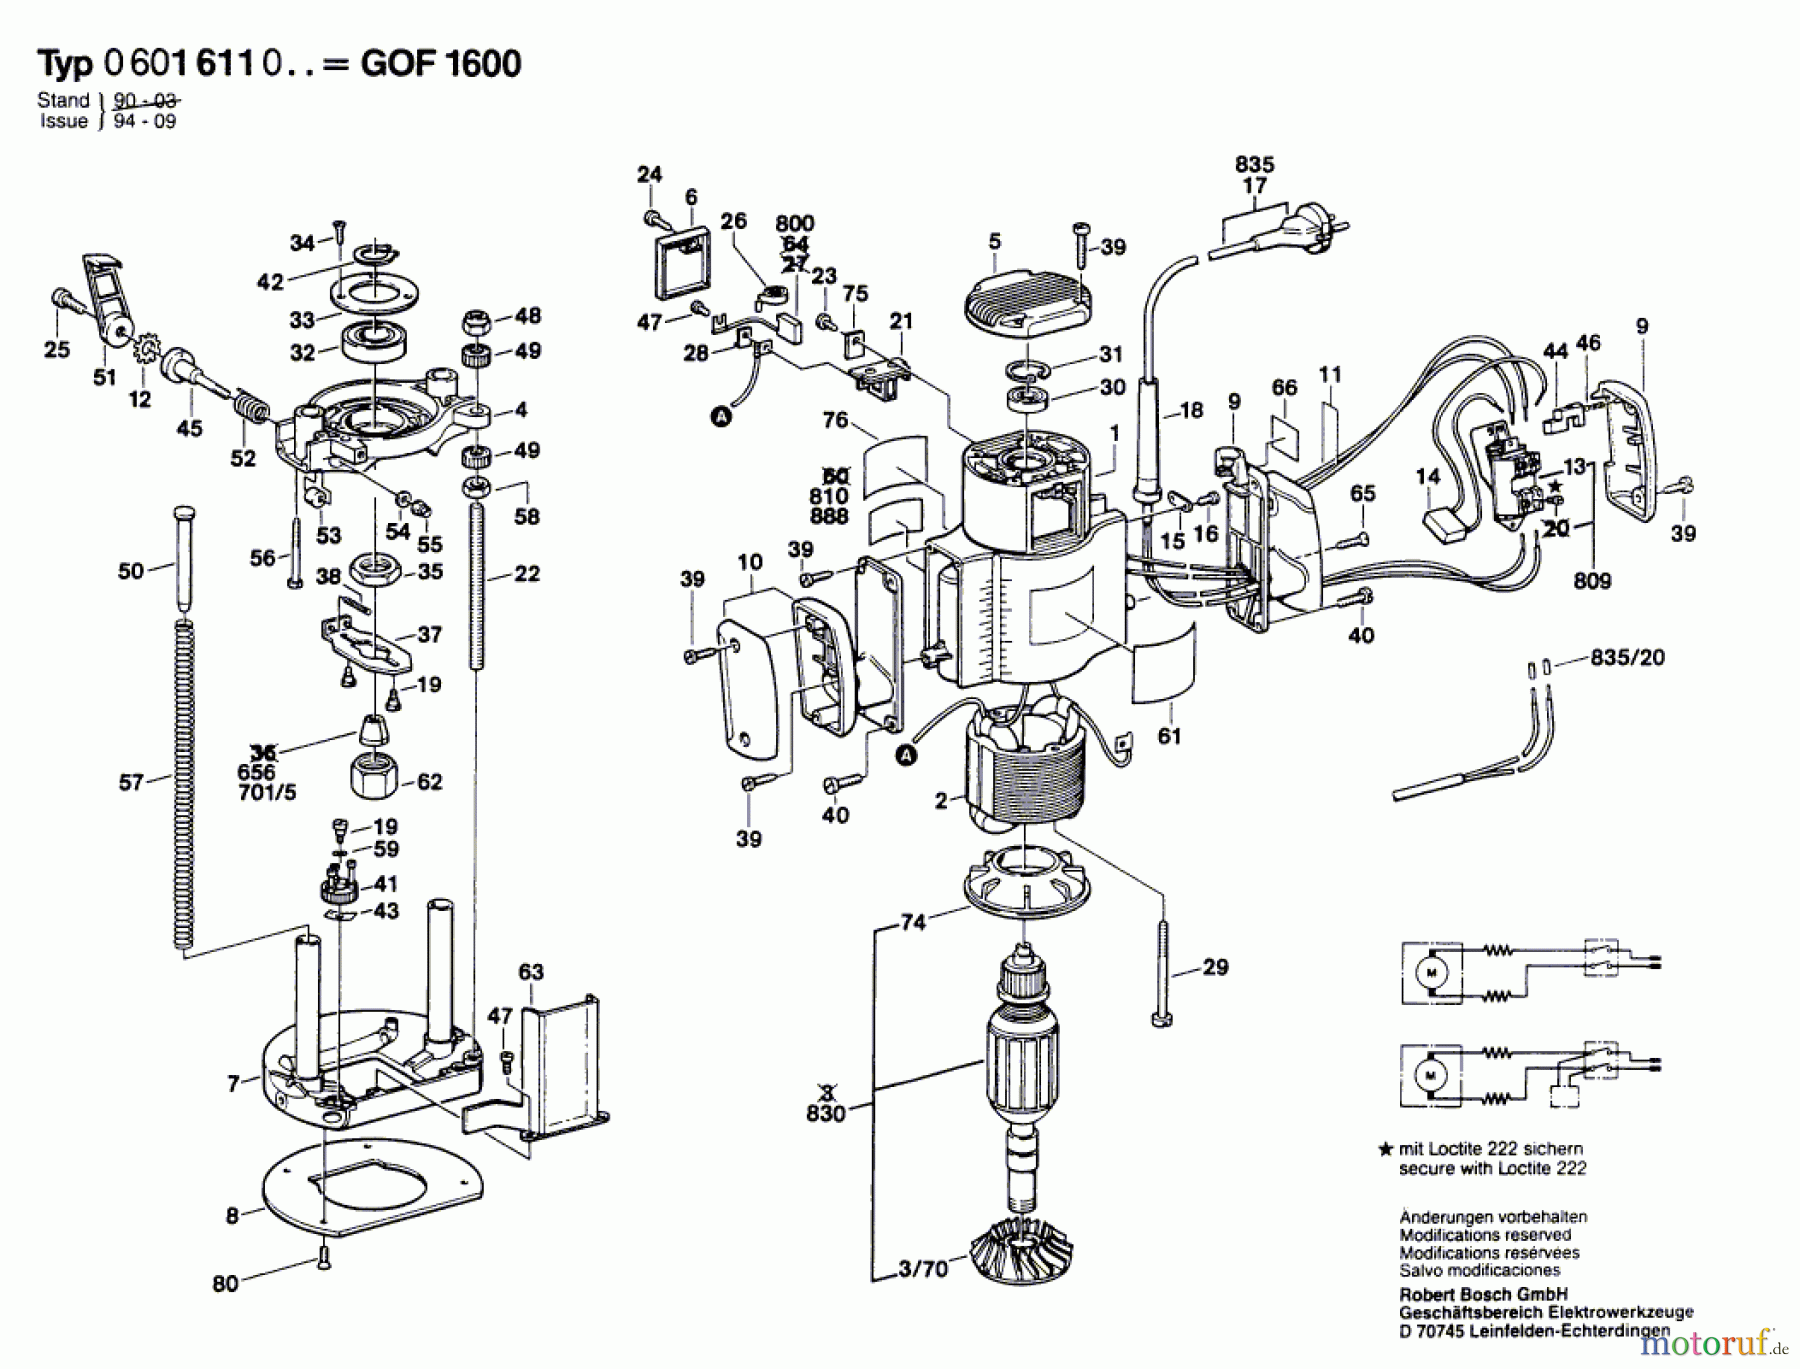  Bosch Werkzeug Gw-Oberfräse GOF 1600 Seite 1